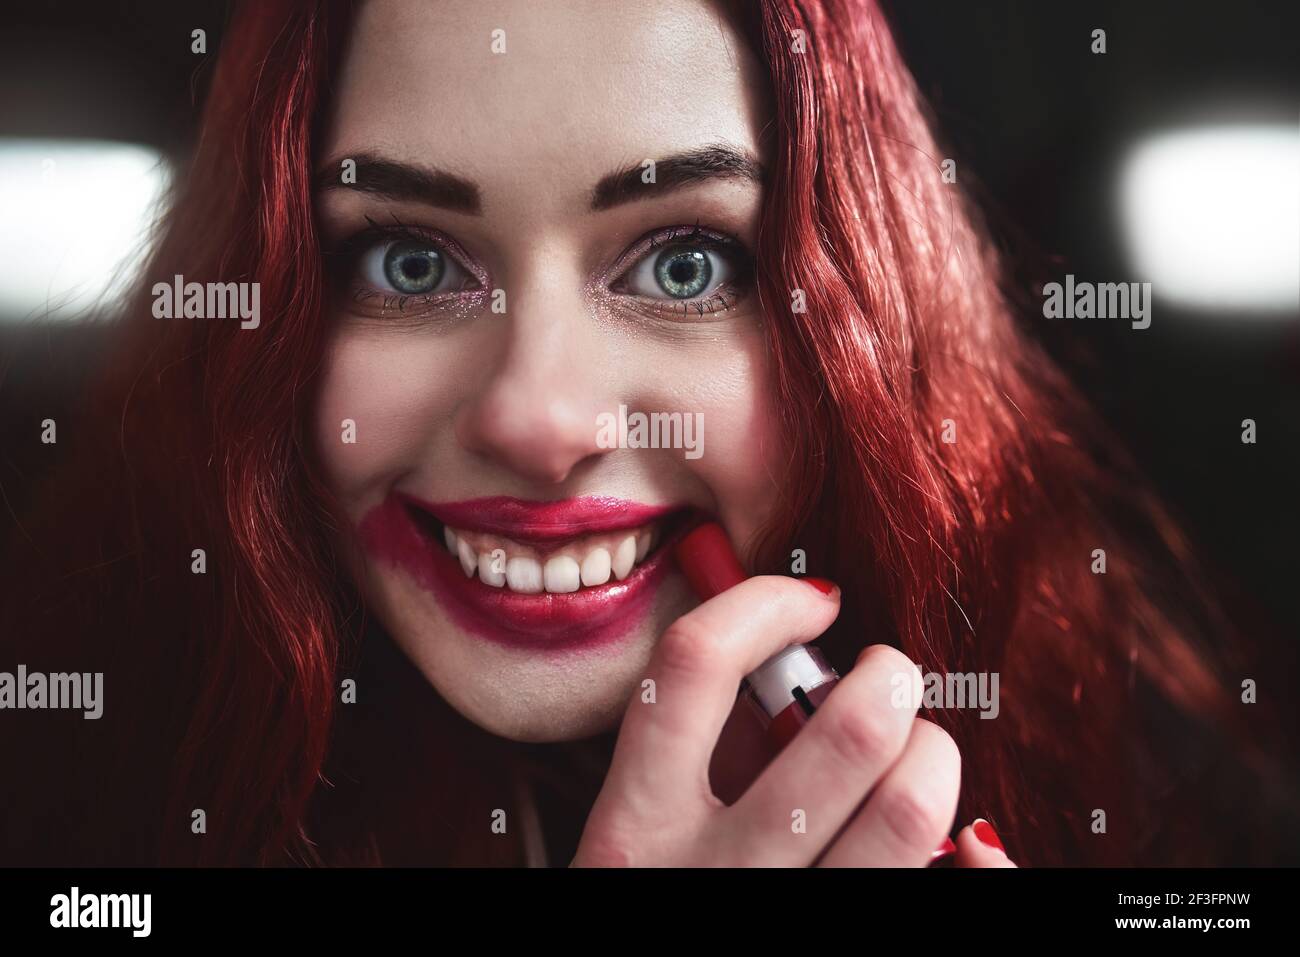 Porträt von verrückt aussehende Teenager-Mädchen mit roten Haaren ist sie schmieren roten Lippenstift auf ihrem Gesicht, Horror-Konzept. halloween-Zeit. Angst und Alptraum Stockfoto